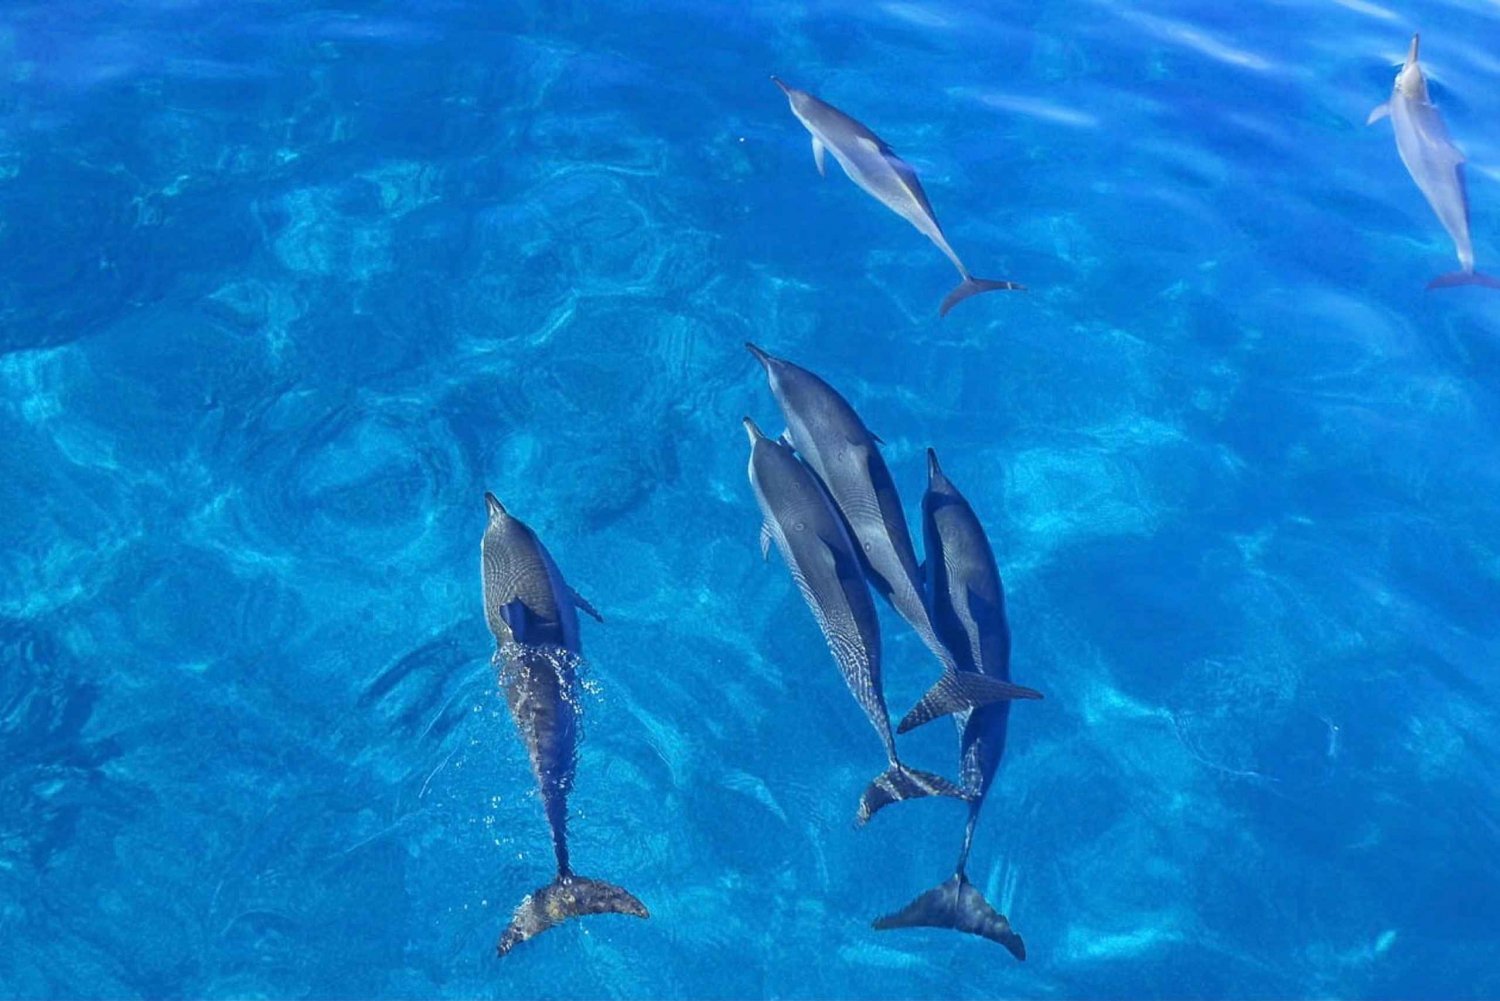 Kailua-Kona: Observação de golfinhos em lancha rápida, cruzeiro com snorkel e churrasco